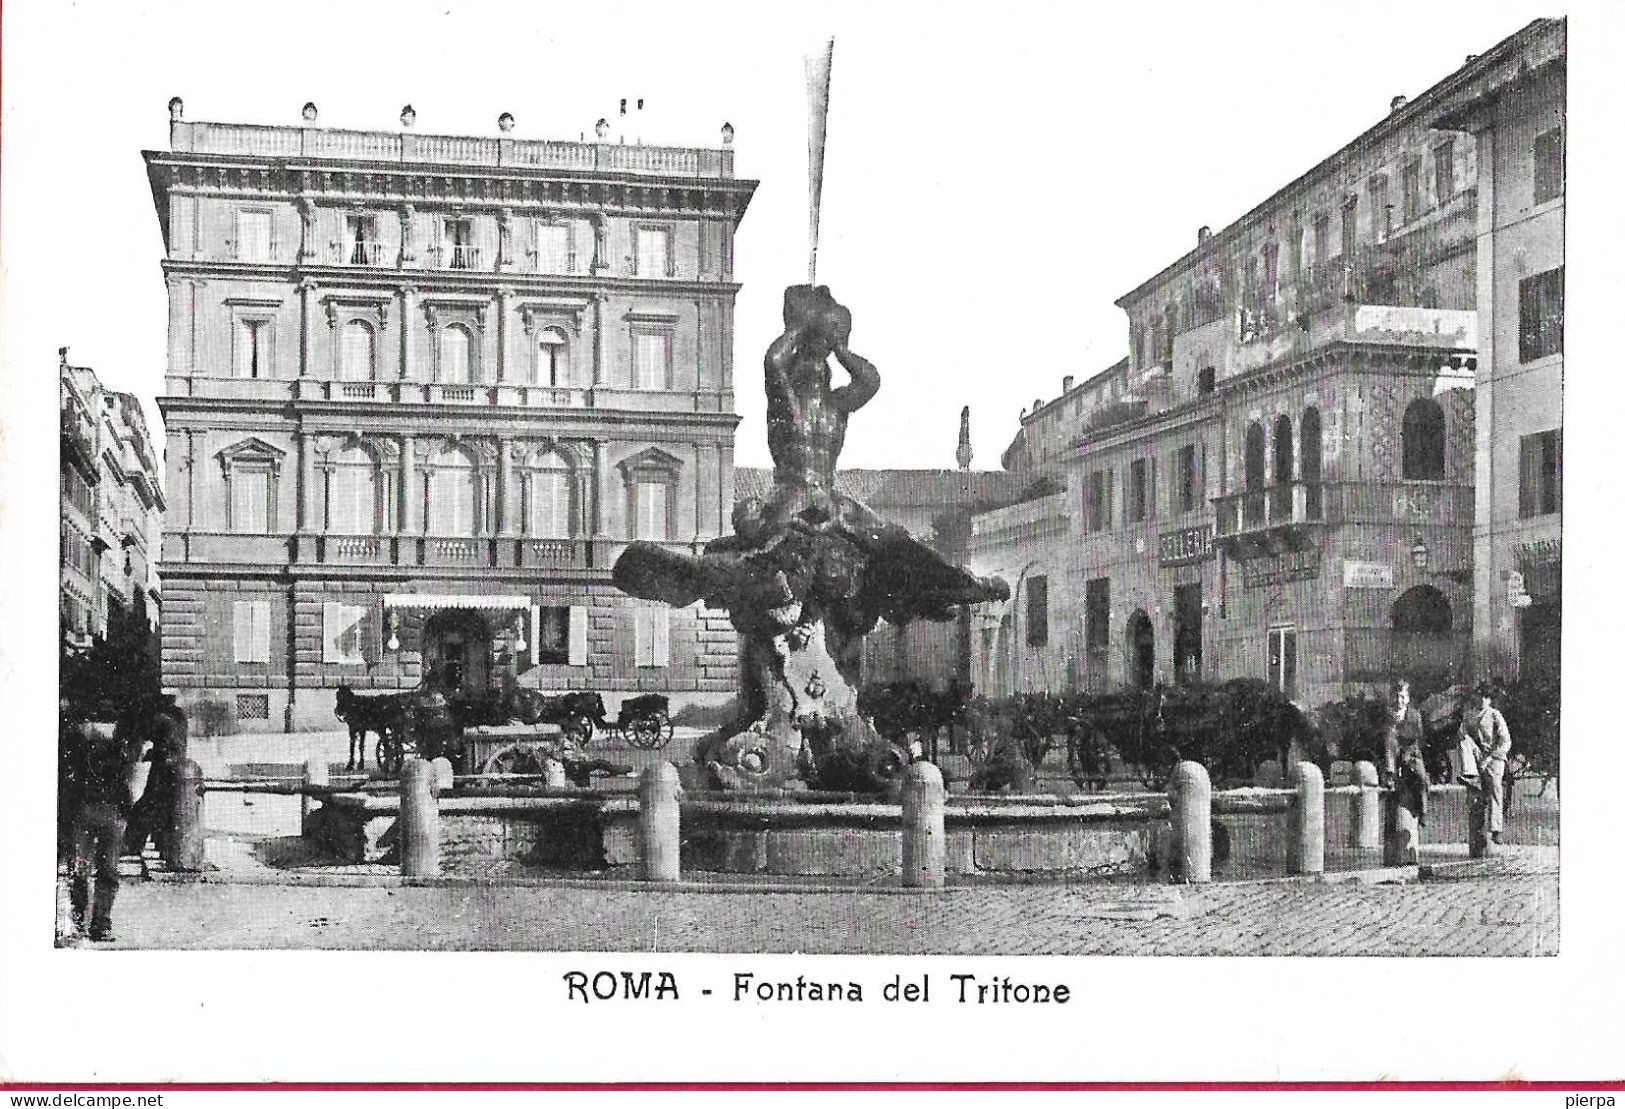 ROMA - FONTANA DEL TRITONE - FORMATO PICCOLO - EDIZ. ORIGINALE ANNI 30 - NUOVA - Andere Monumente & Gebäude